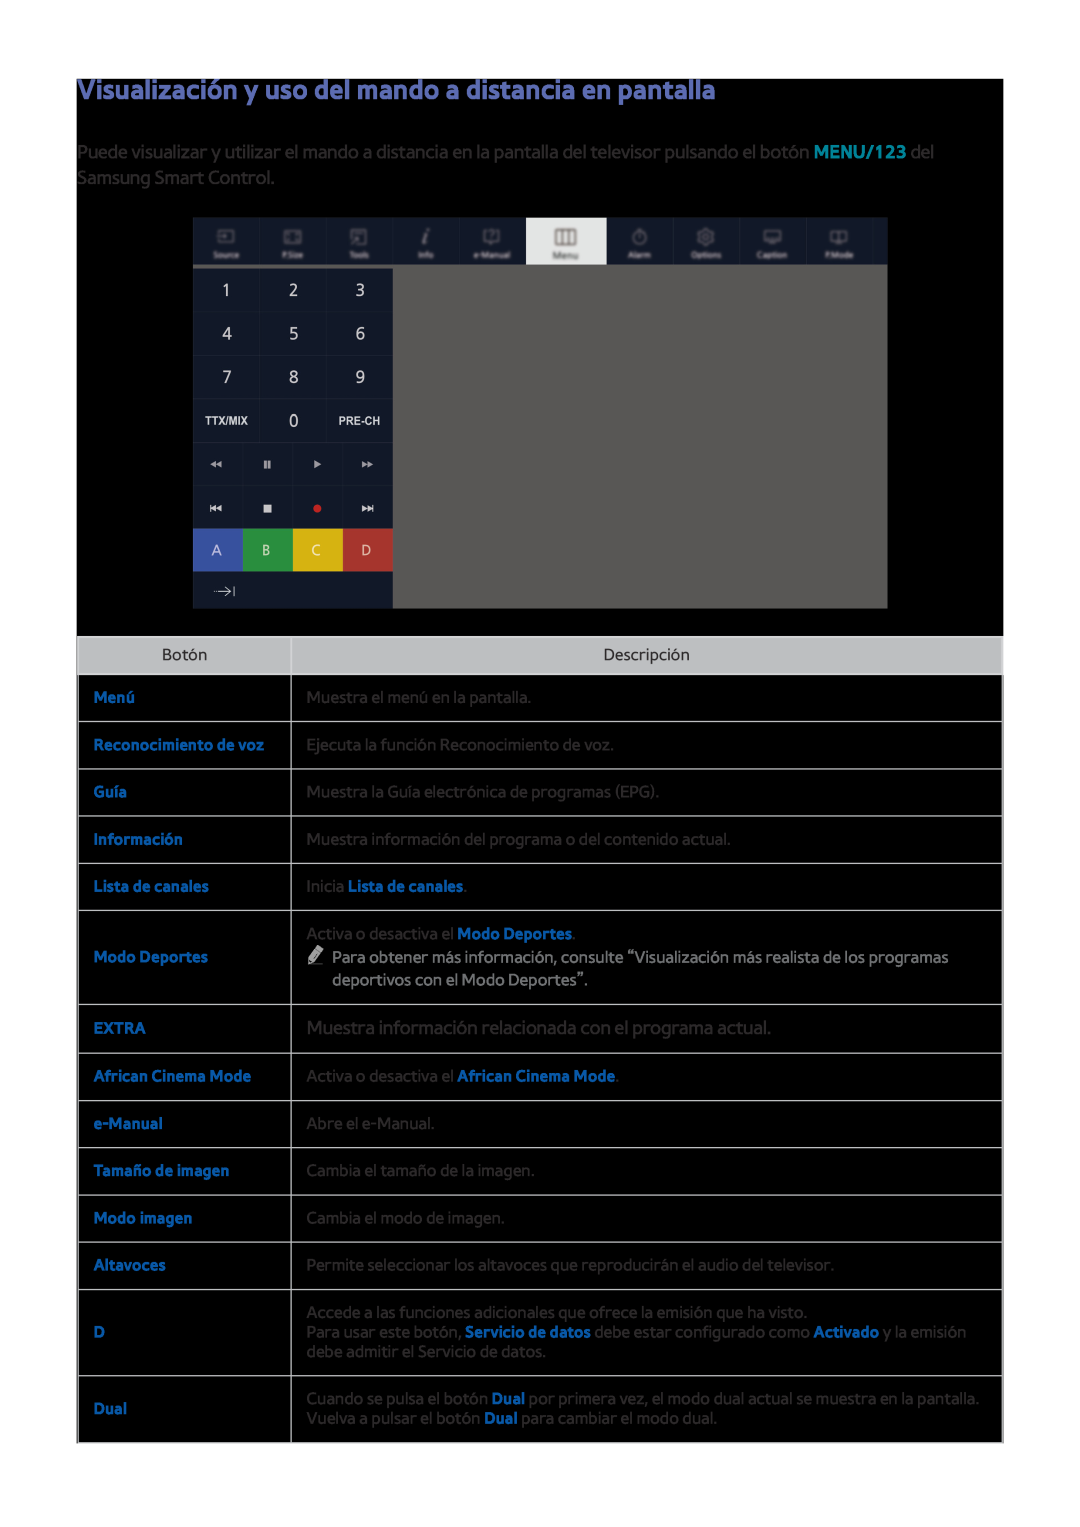 Samsung UE50J6200AKXXC Visualización y uso del mando a distancia en pantalla, Menú, Reconocimiento de voz, Guía, Extra 